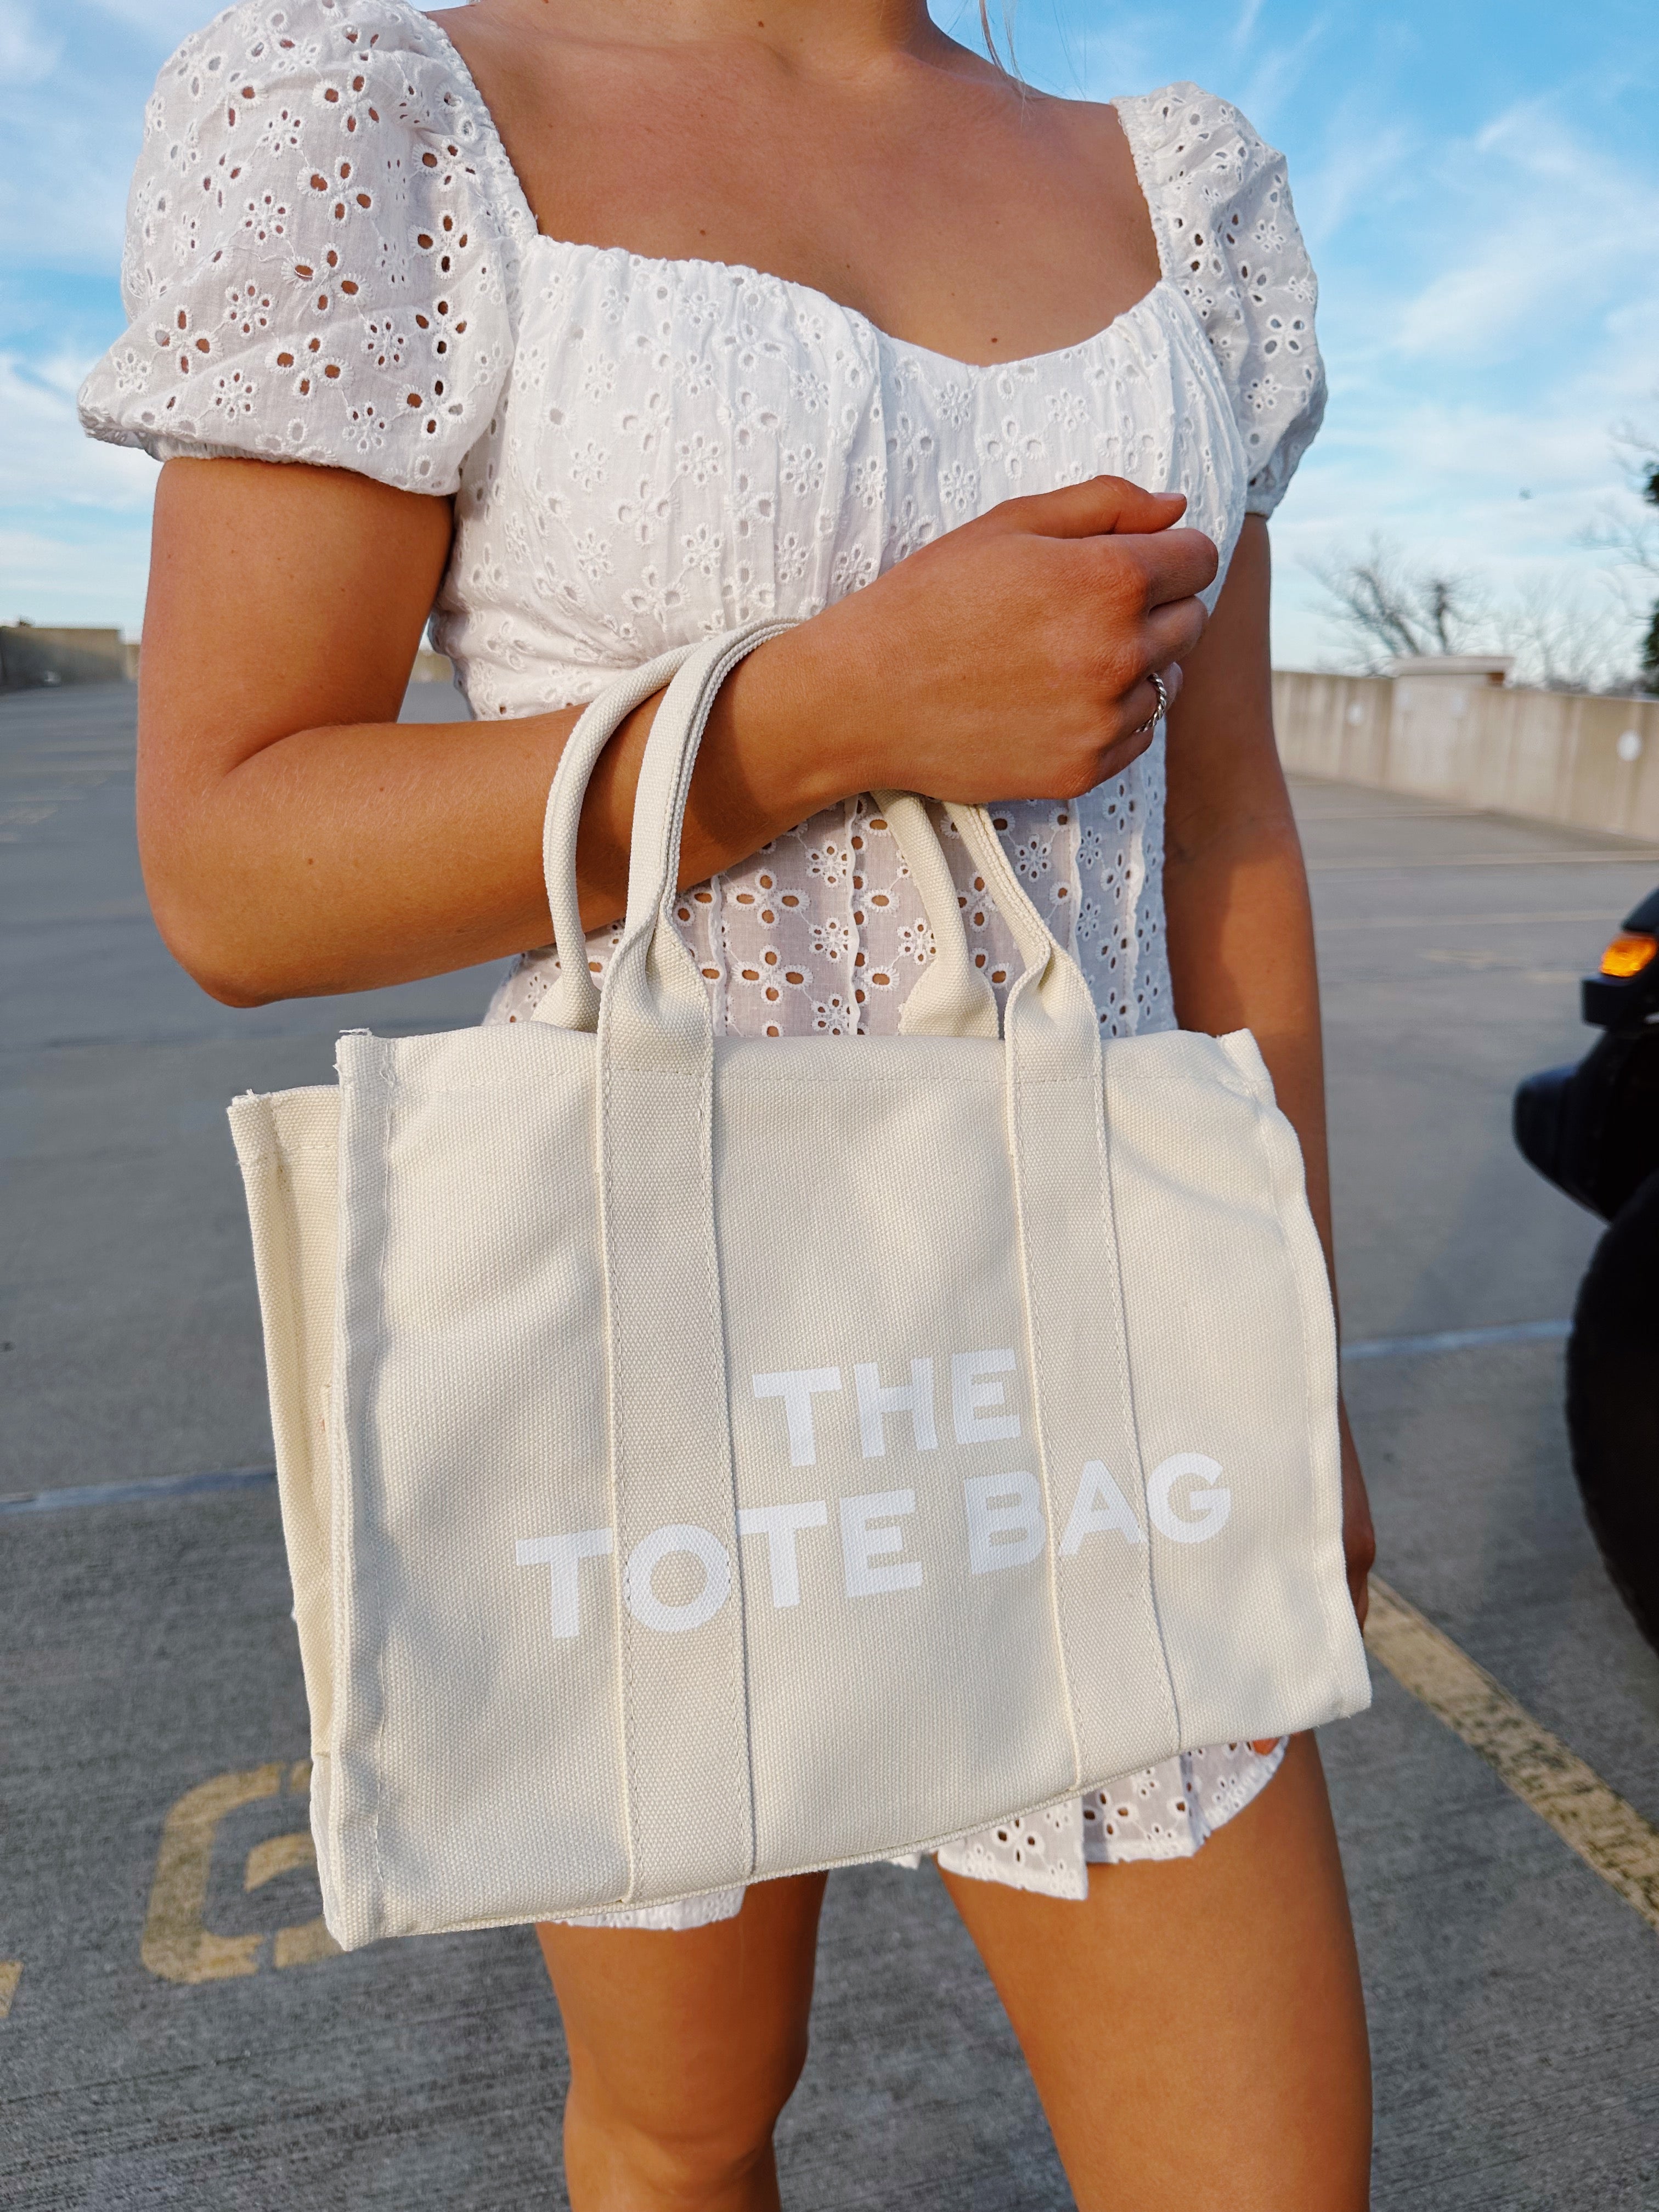 The Tote Bag - Cream